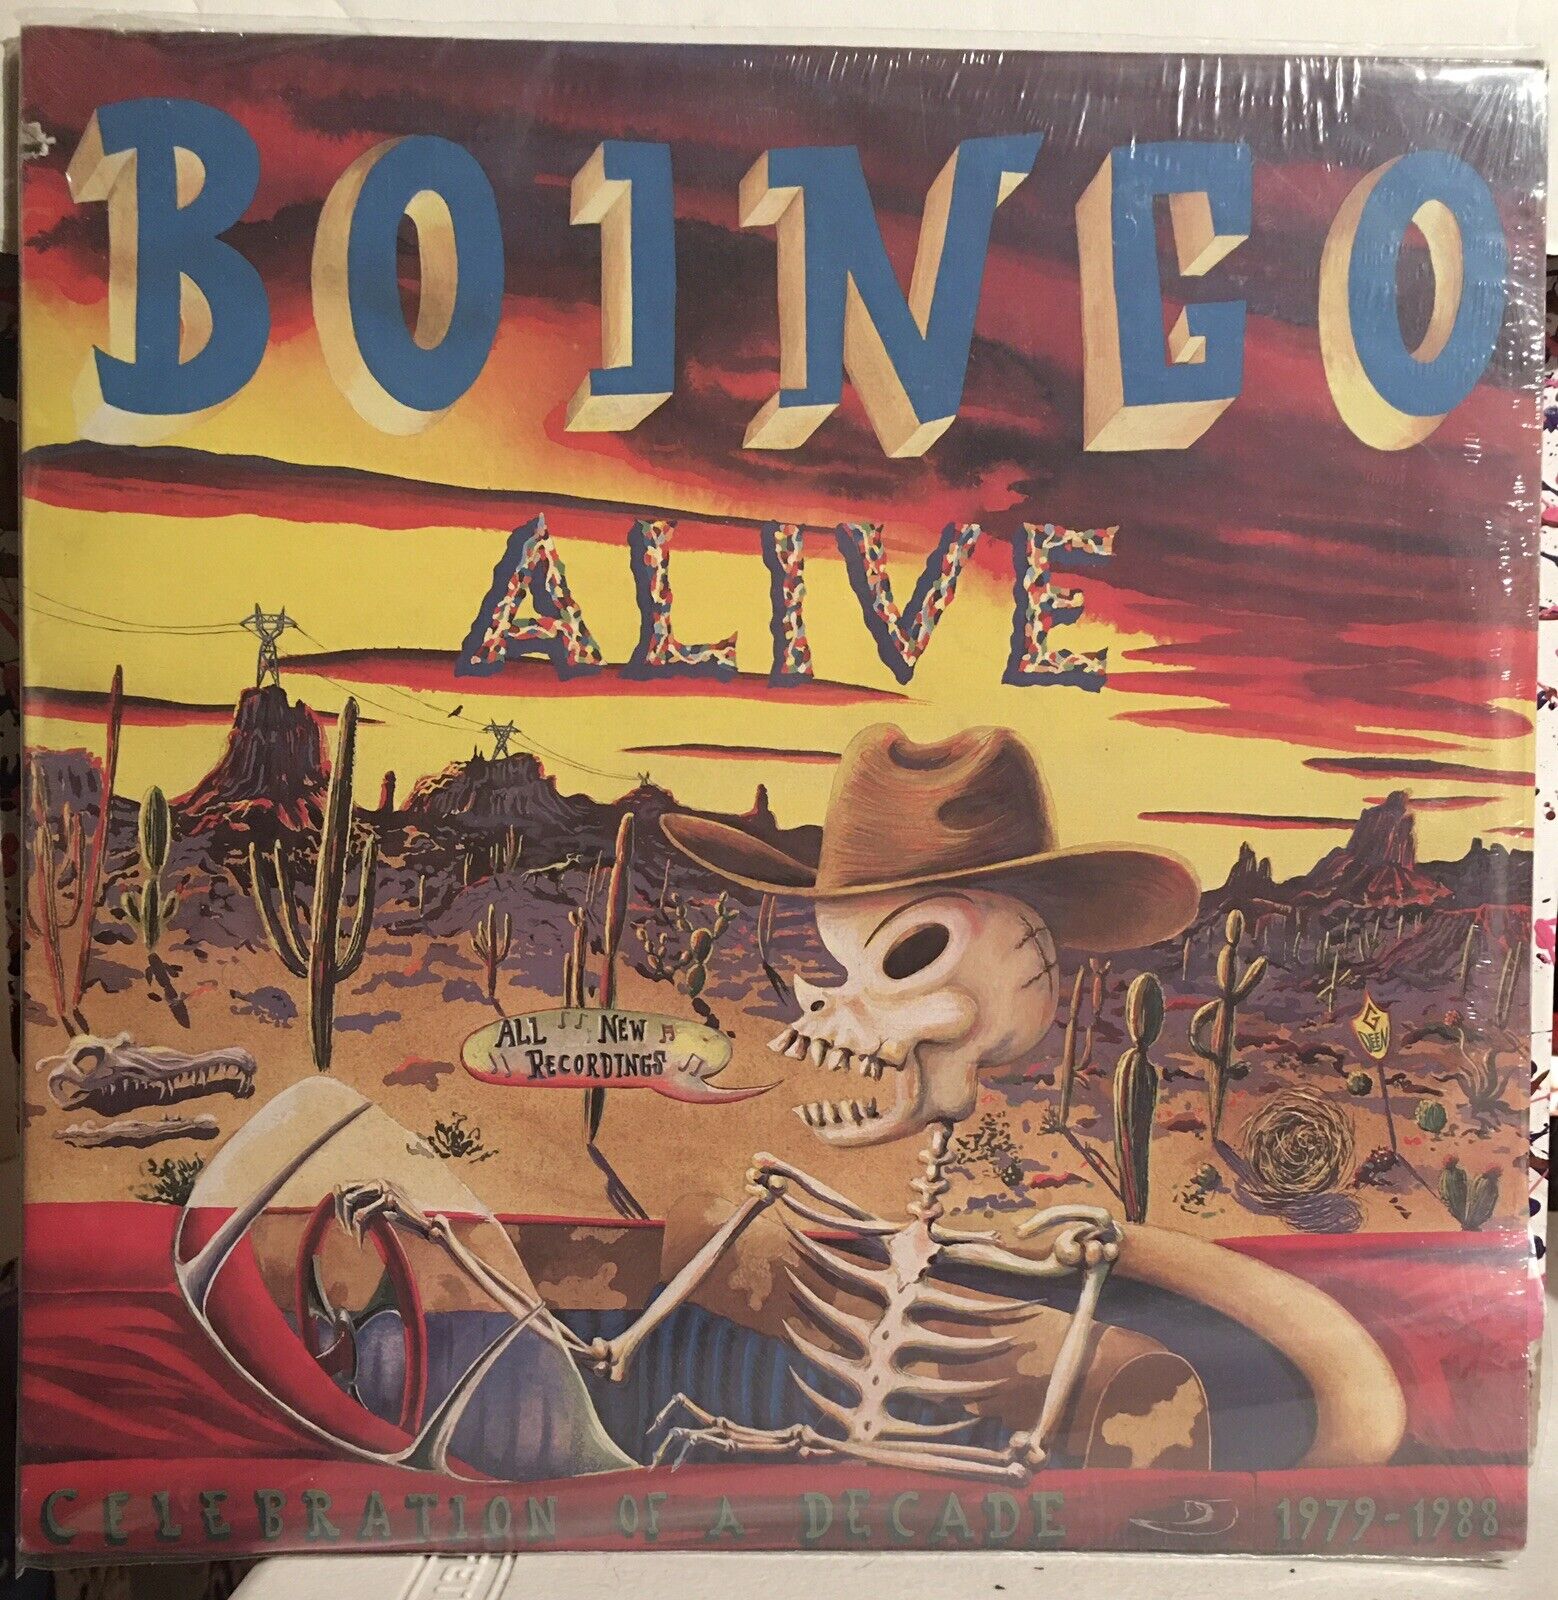 Oingo Boingo - Bonigo Alive Lp - 1988 (SS)